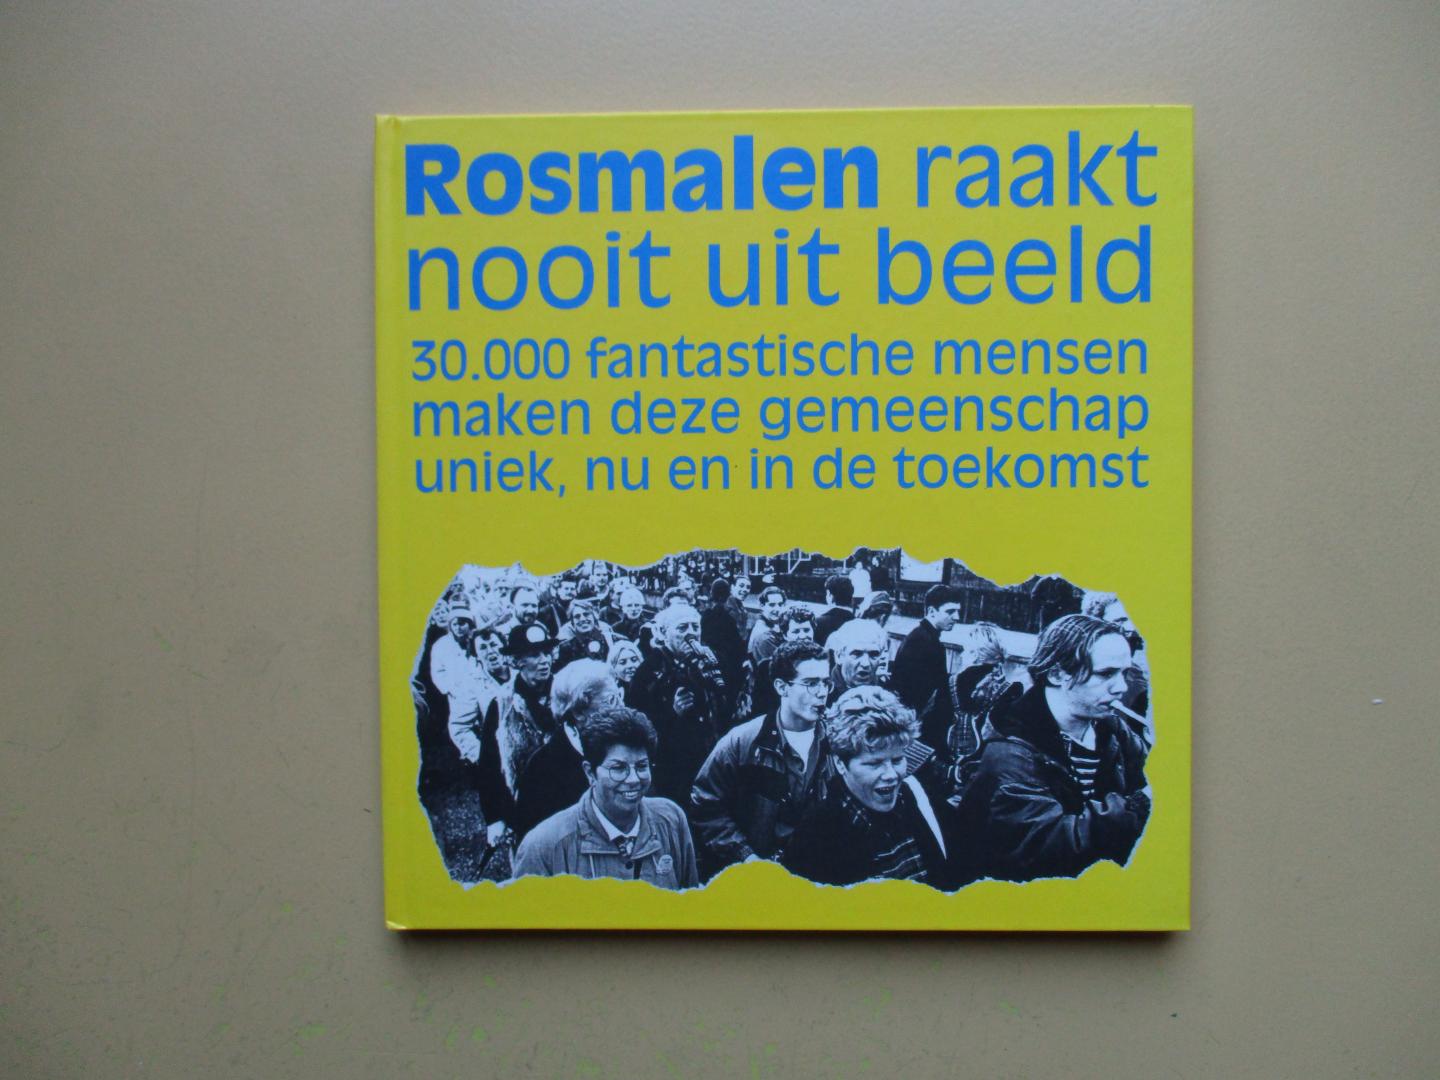 Sluis, van - Rosmalen raakt nooit uit beeld.  30.000 fantastische mensen maken deze gemeenschap uniek, nu en in de toekomst.